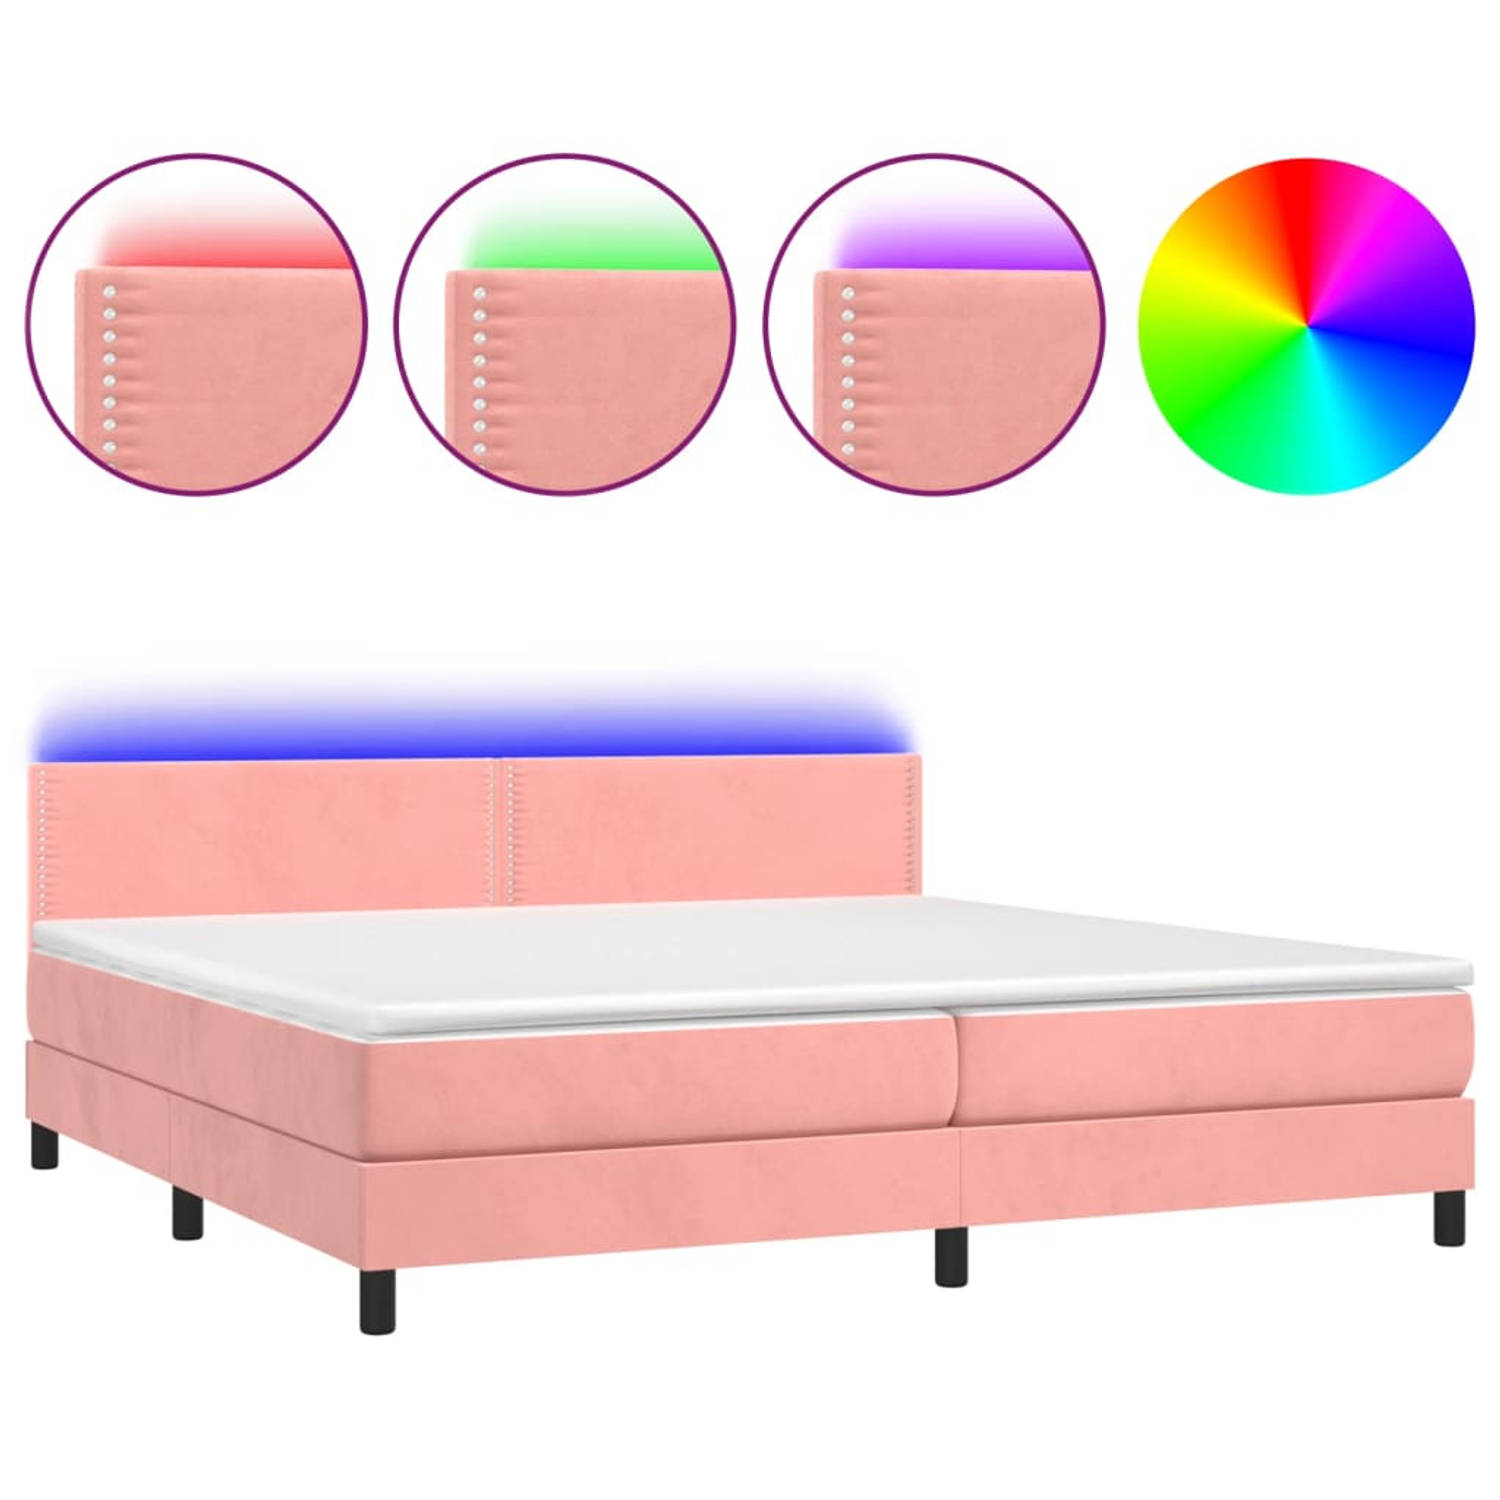 The Living Store Bed Boxspring - 203 x 200 x 78/88 cm - Roze Fluweel - Pocketvering Matras - Huidvriendelijk Topmatras - Kleurrijke LED-verlichting - USB aansluiting